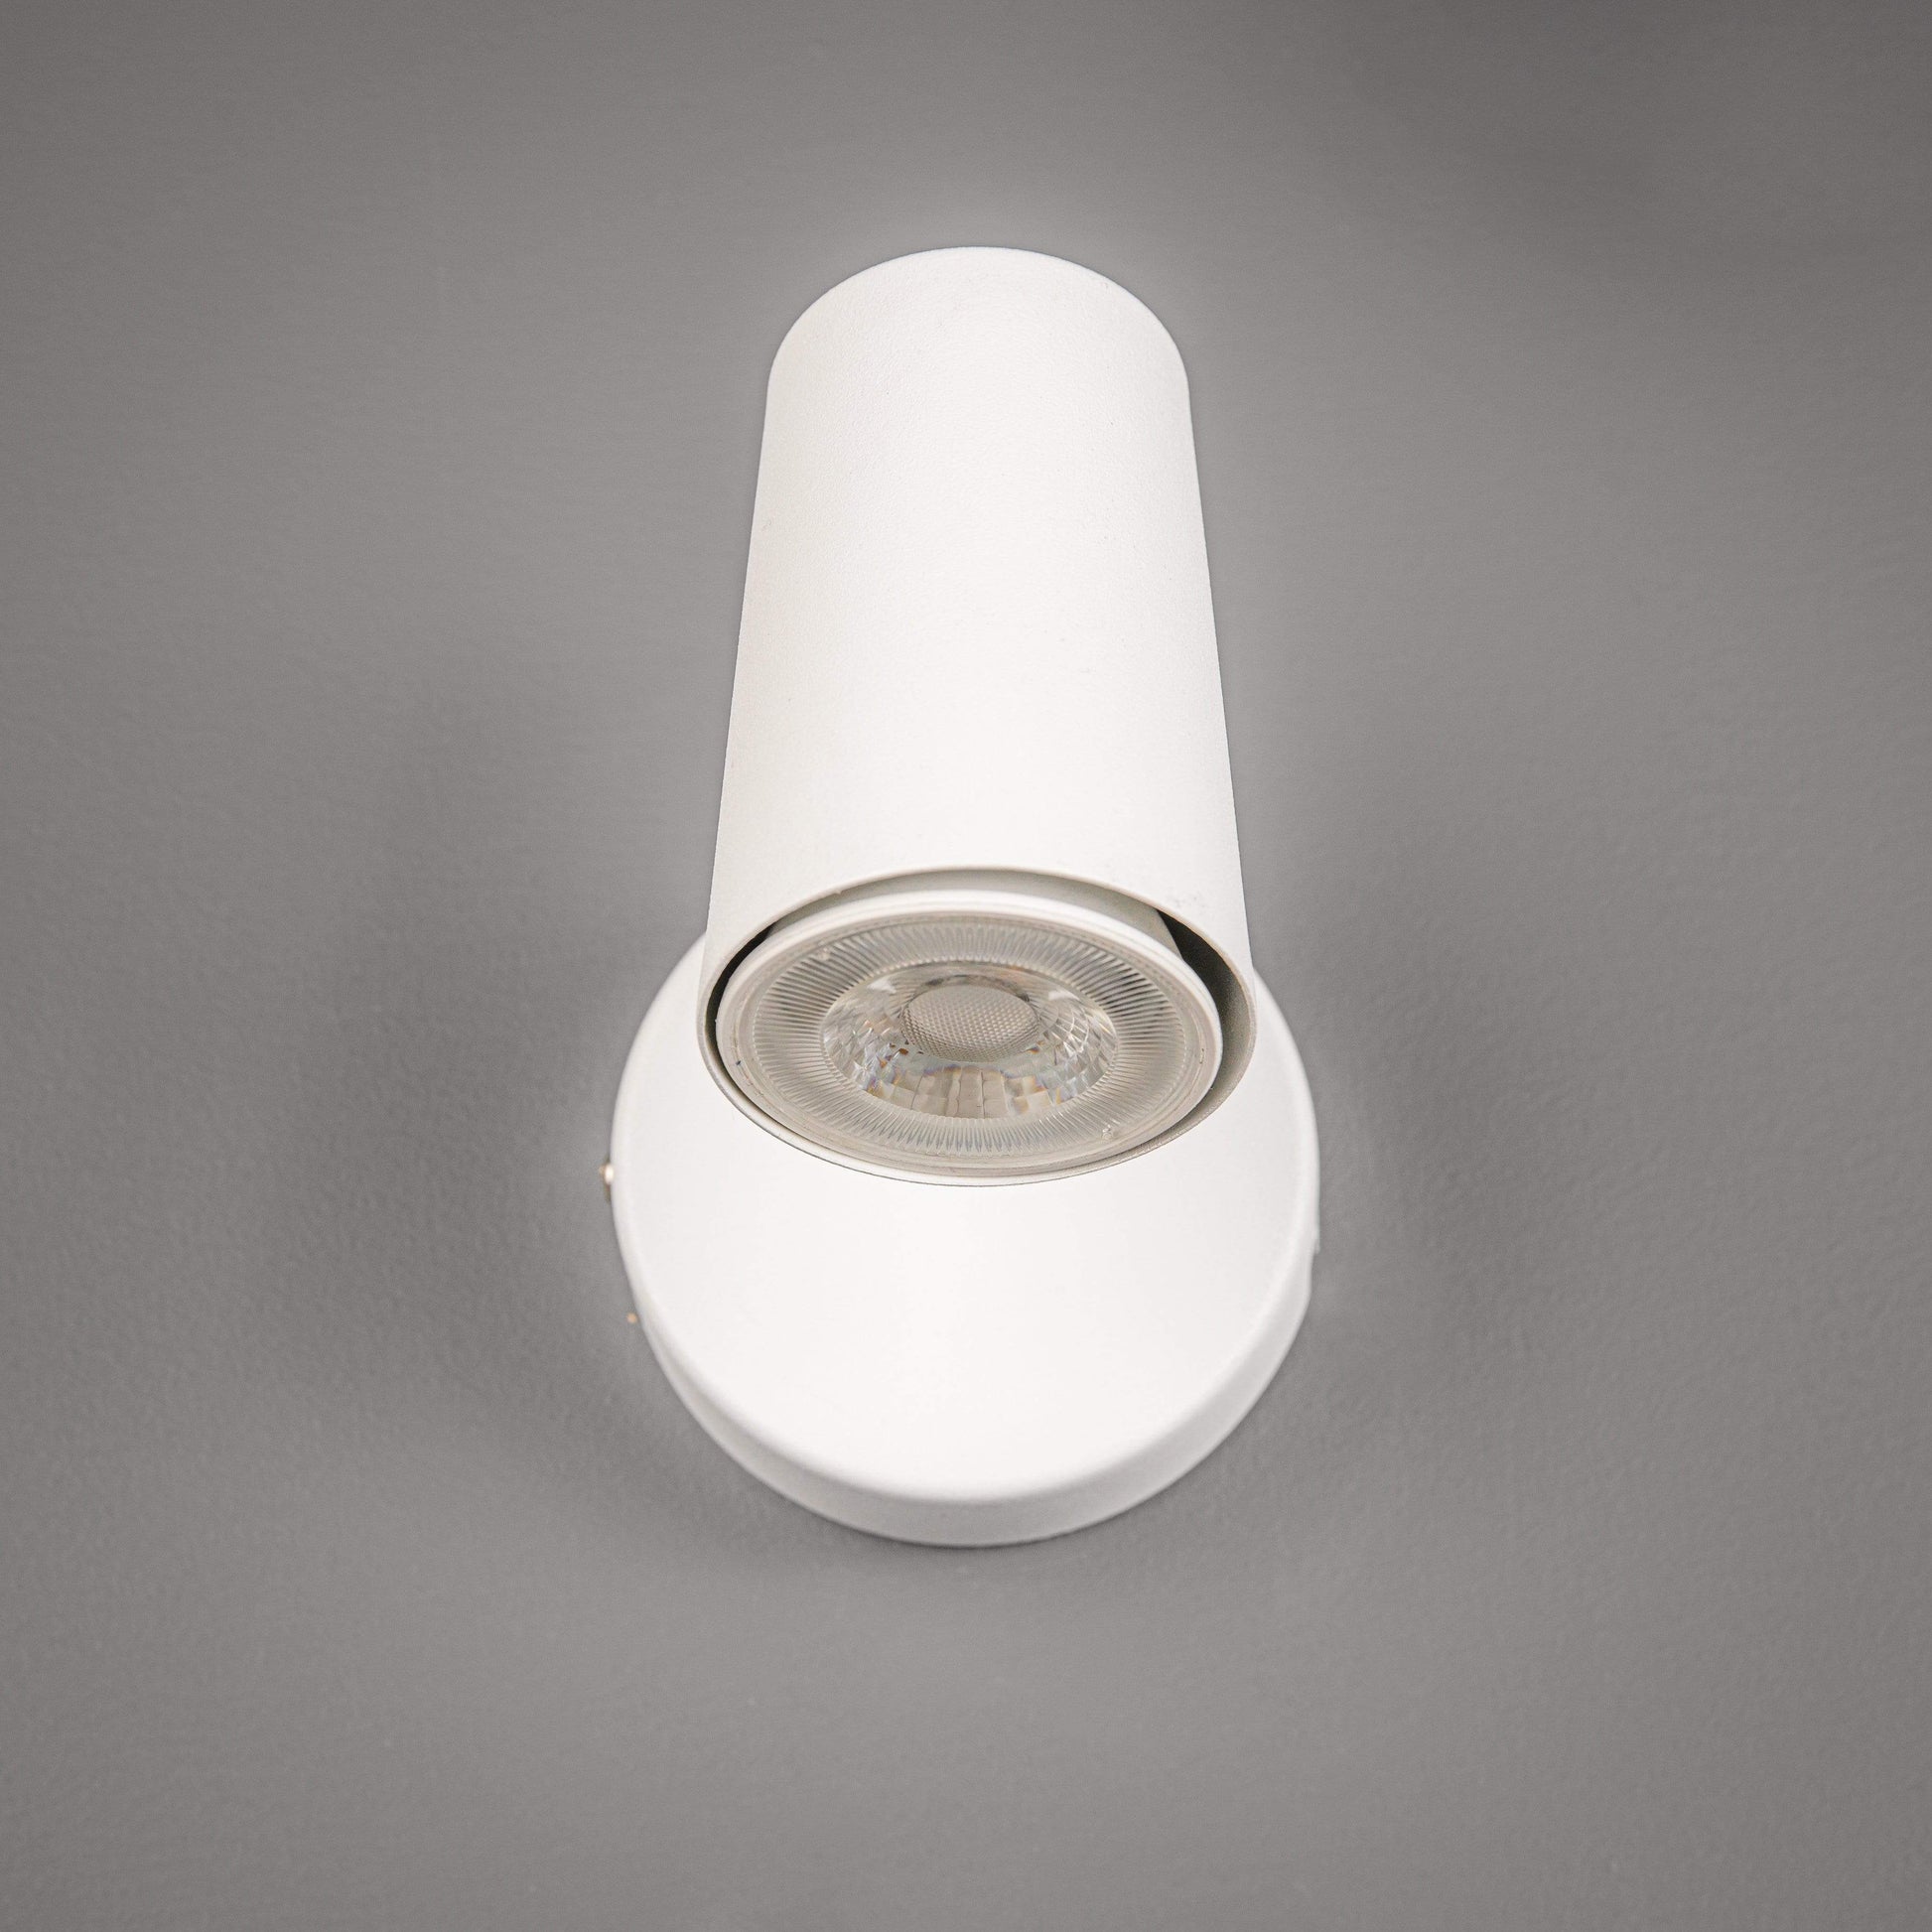 Lights  -  Forum Lighting Harvey Single Spotlight White Ceiling Light  -  50148224